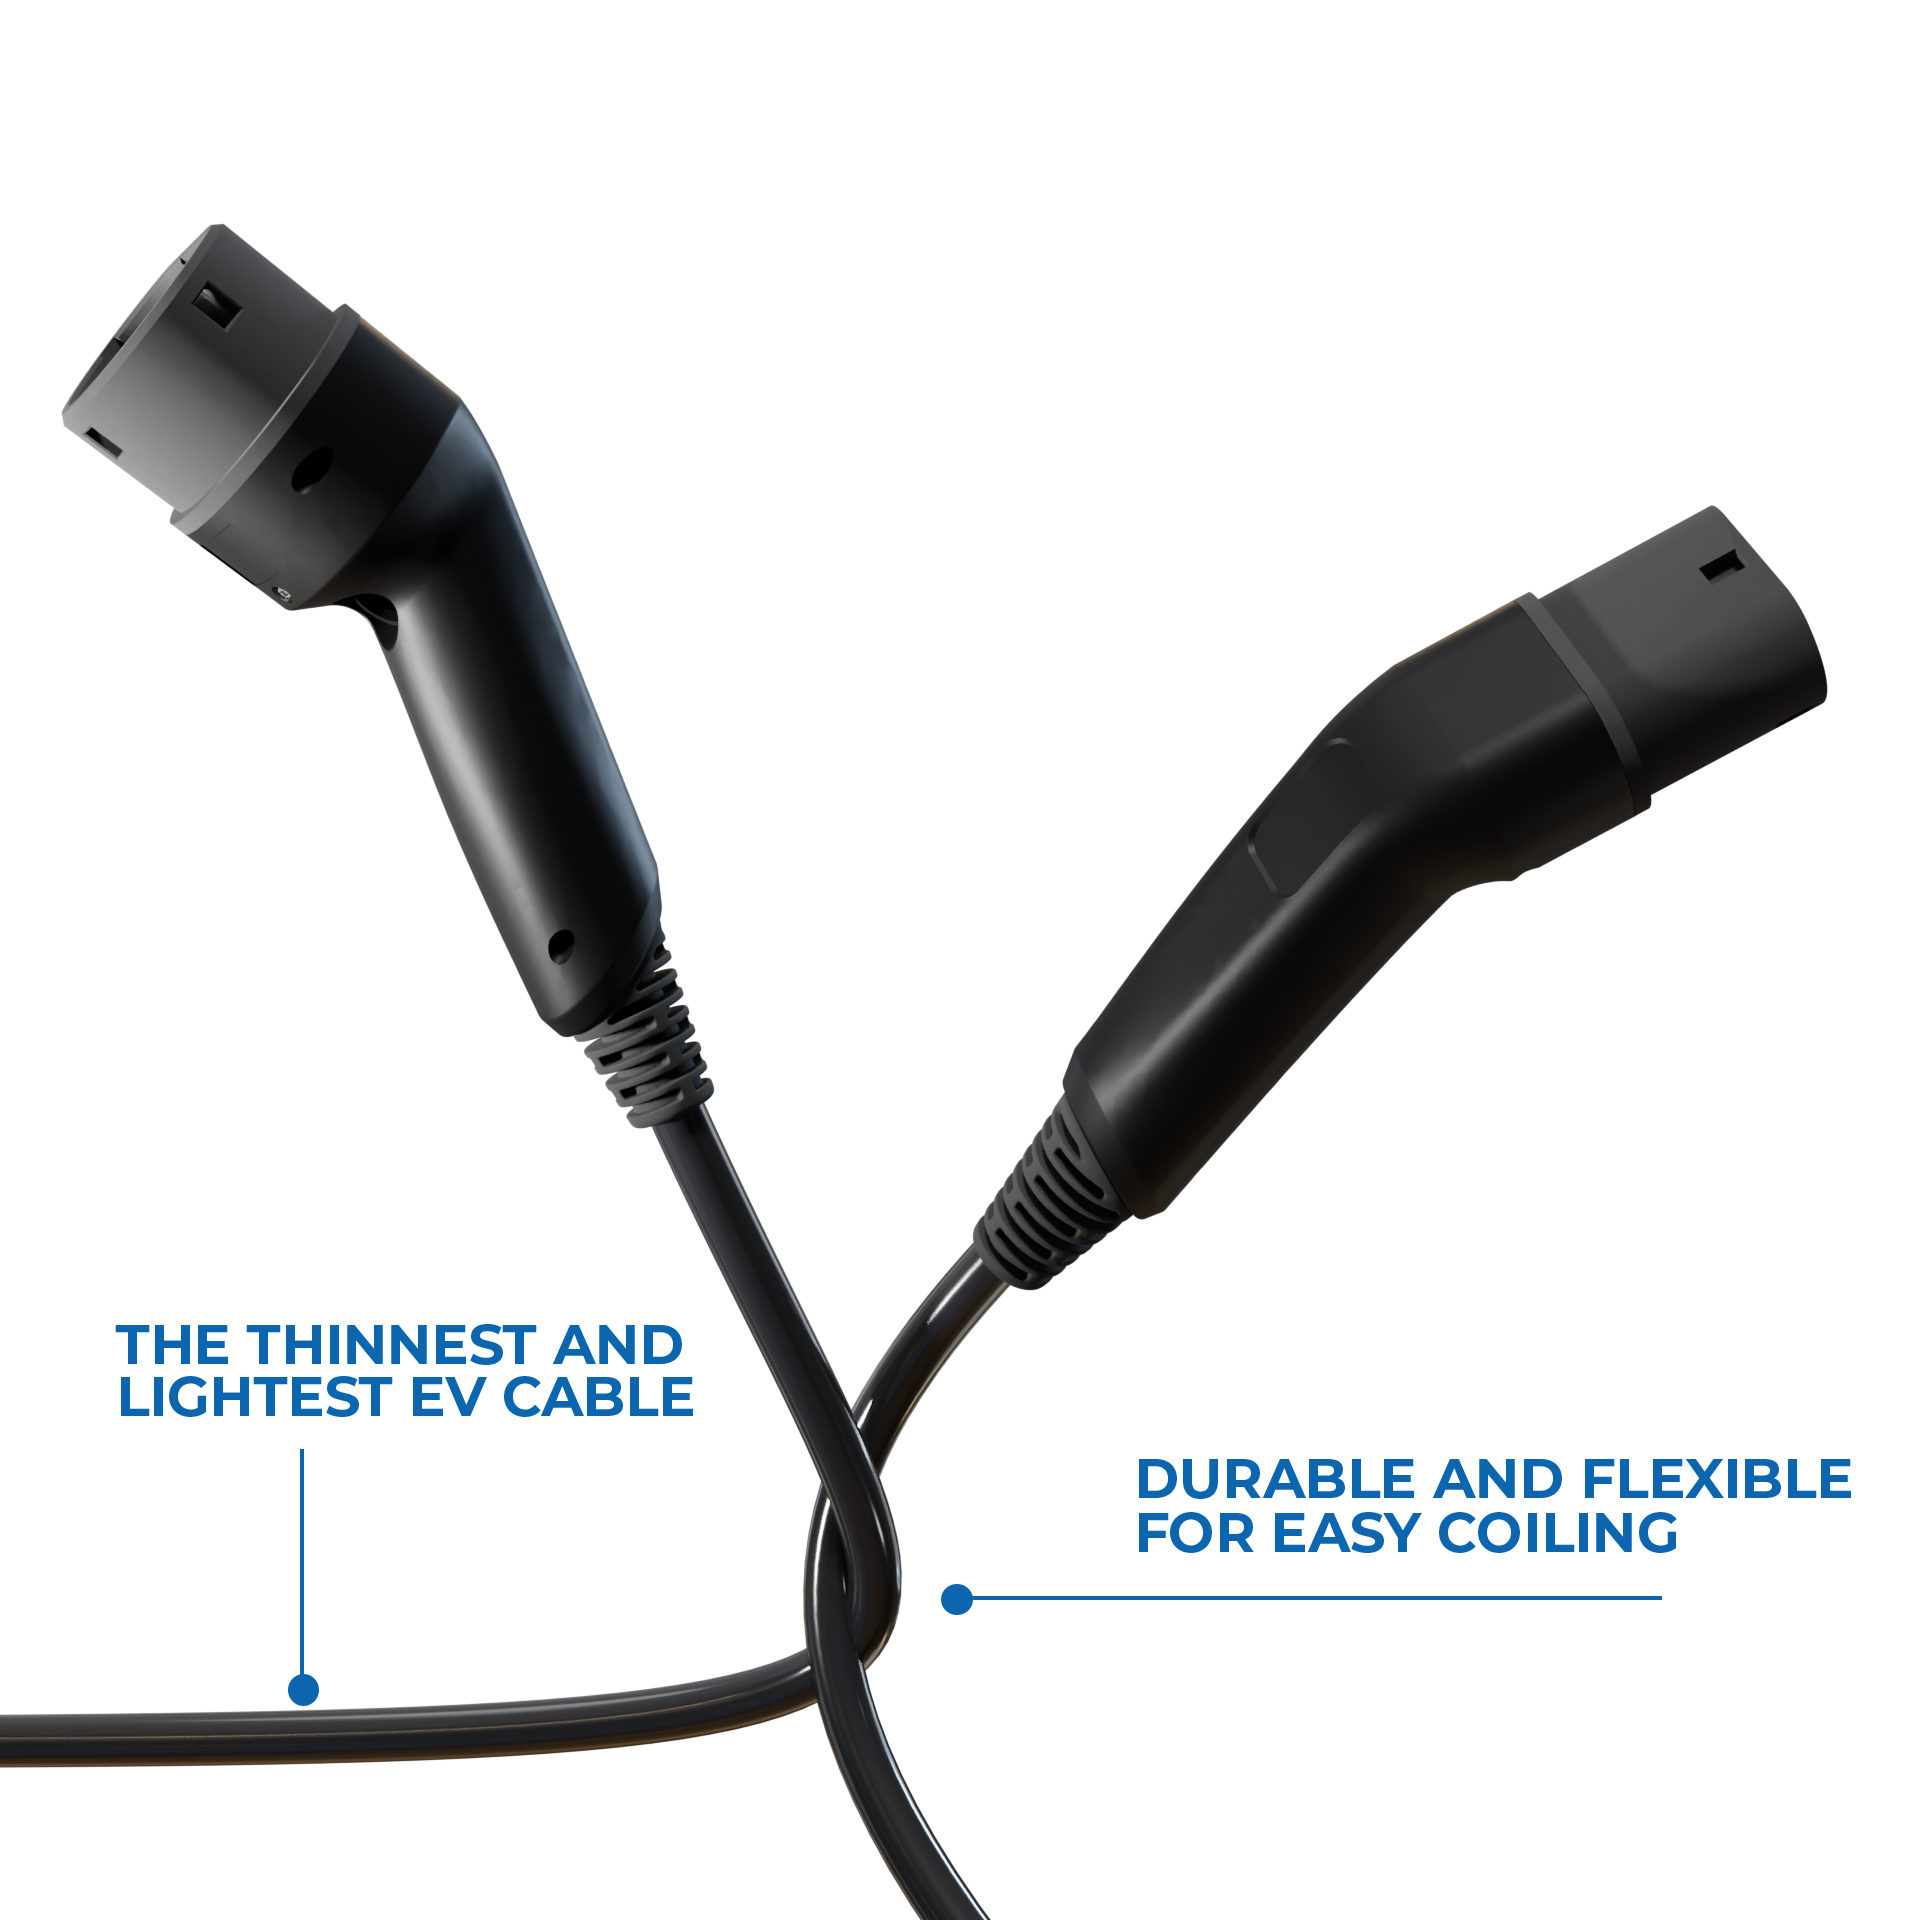 EV Cable Flex Features